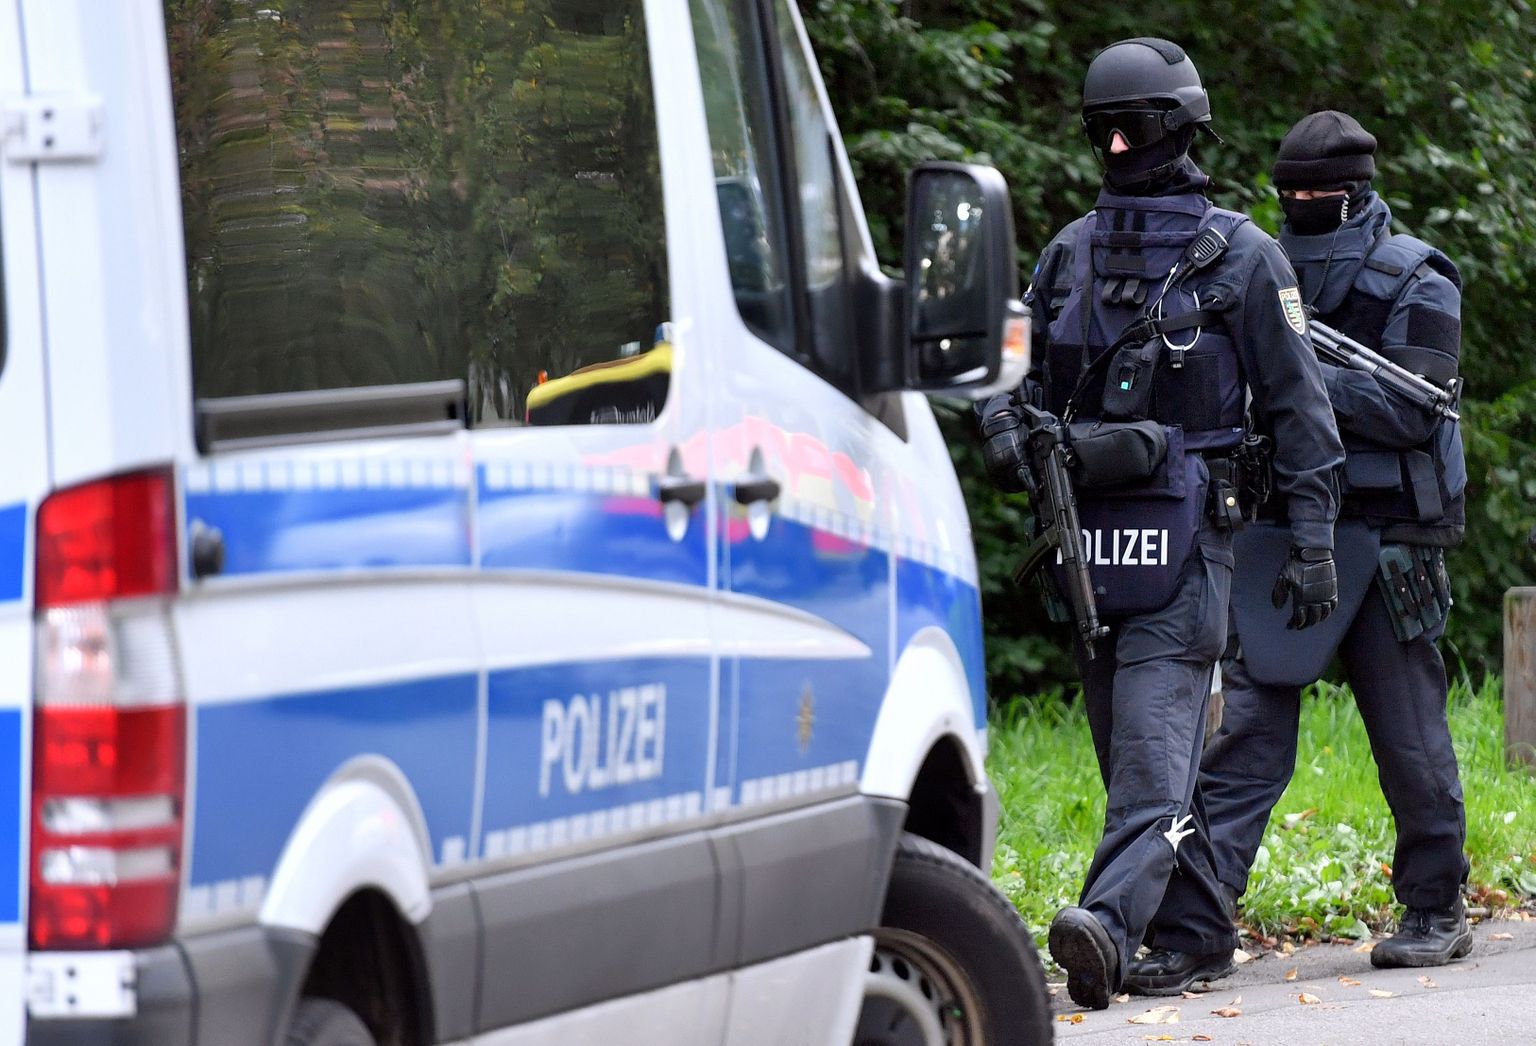 Politsei eriüksuslased Chemnitzis, kus kahtlustatavat süürlast pingeliselt tabada üritati.